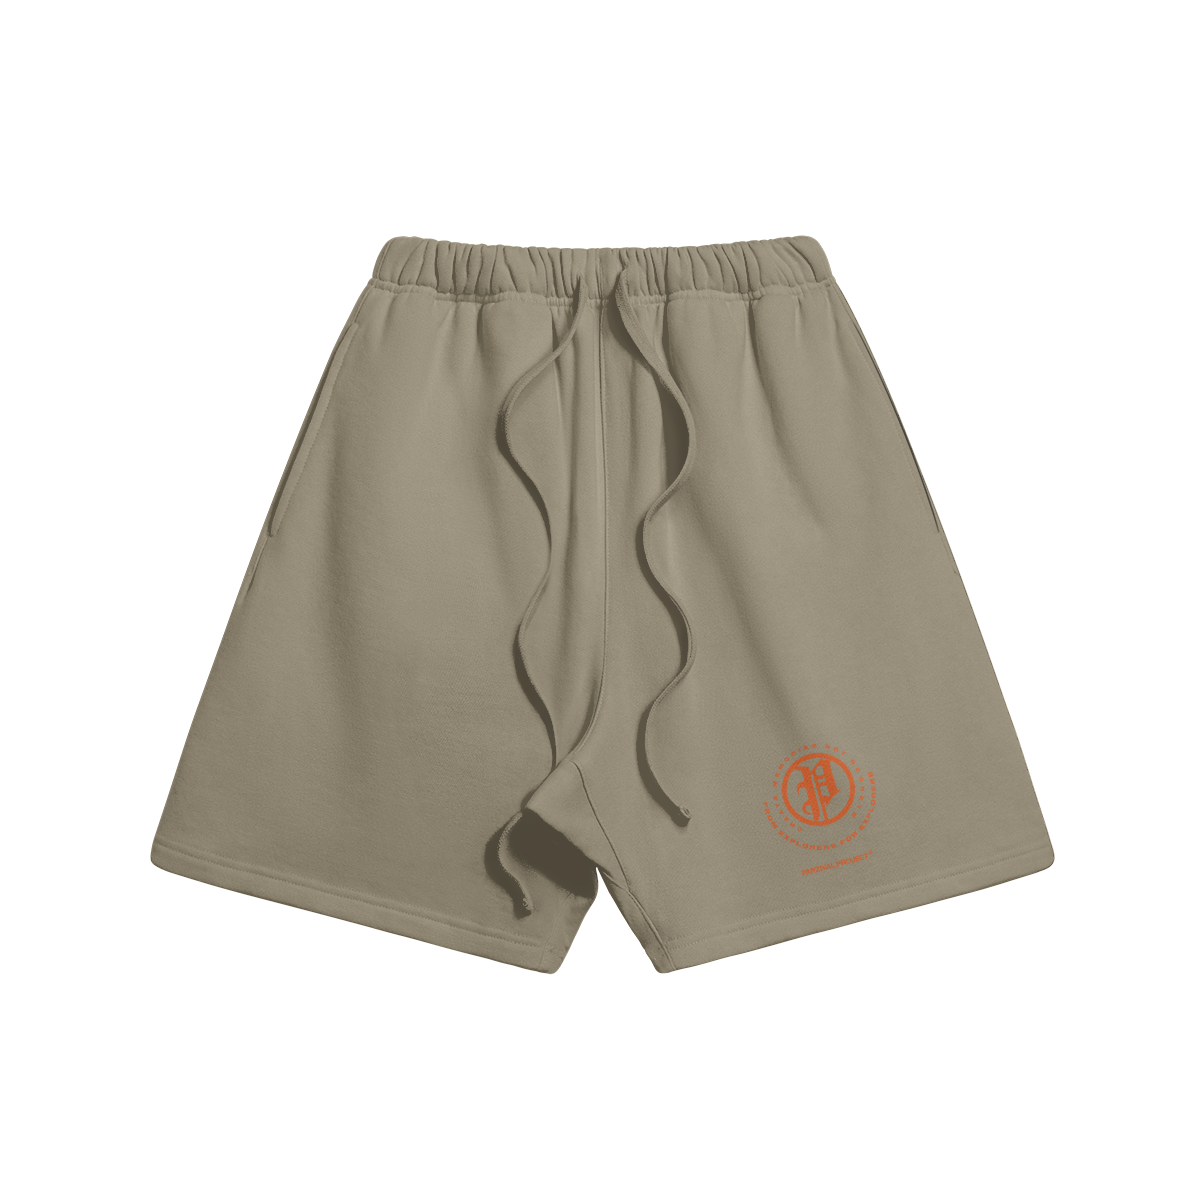 explorer shorts - orange logo